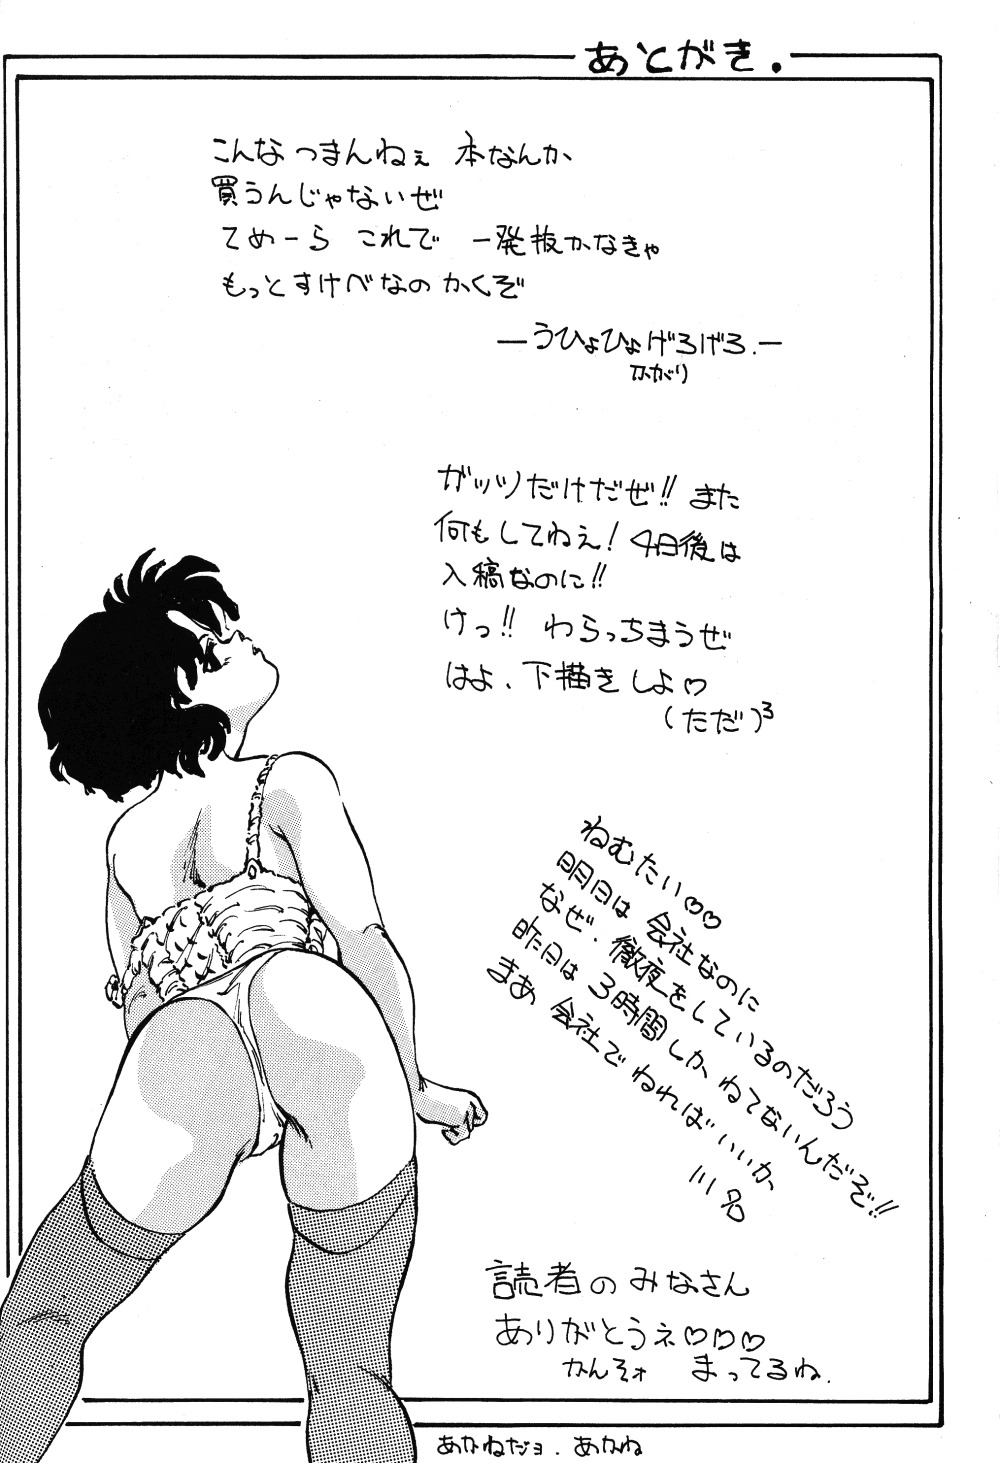 [TADA-TADA-TADA / Lamia Planting (Kagarir Rui, Kawanat Takumi, Yosida Yusuke)] Ranma RGV (Ranma 1/2) [English] [SaHa] page 37 full